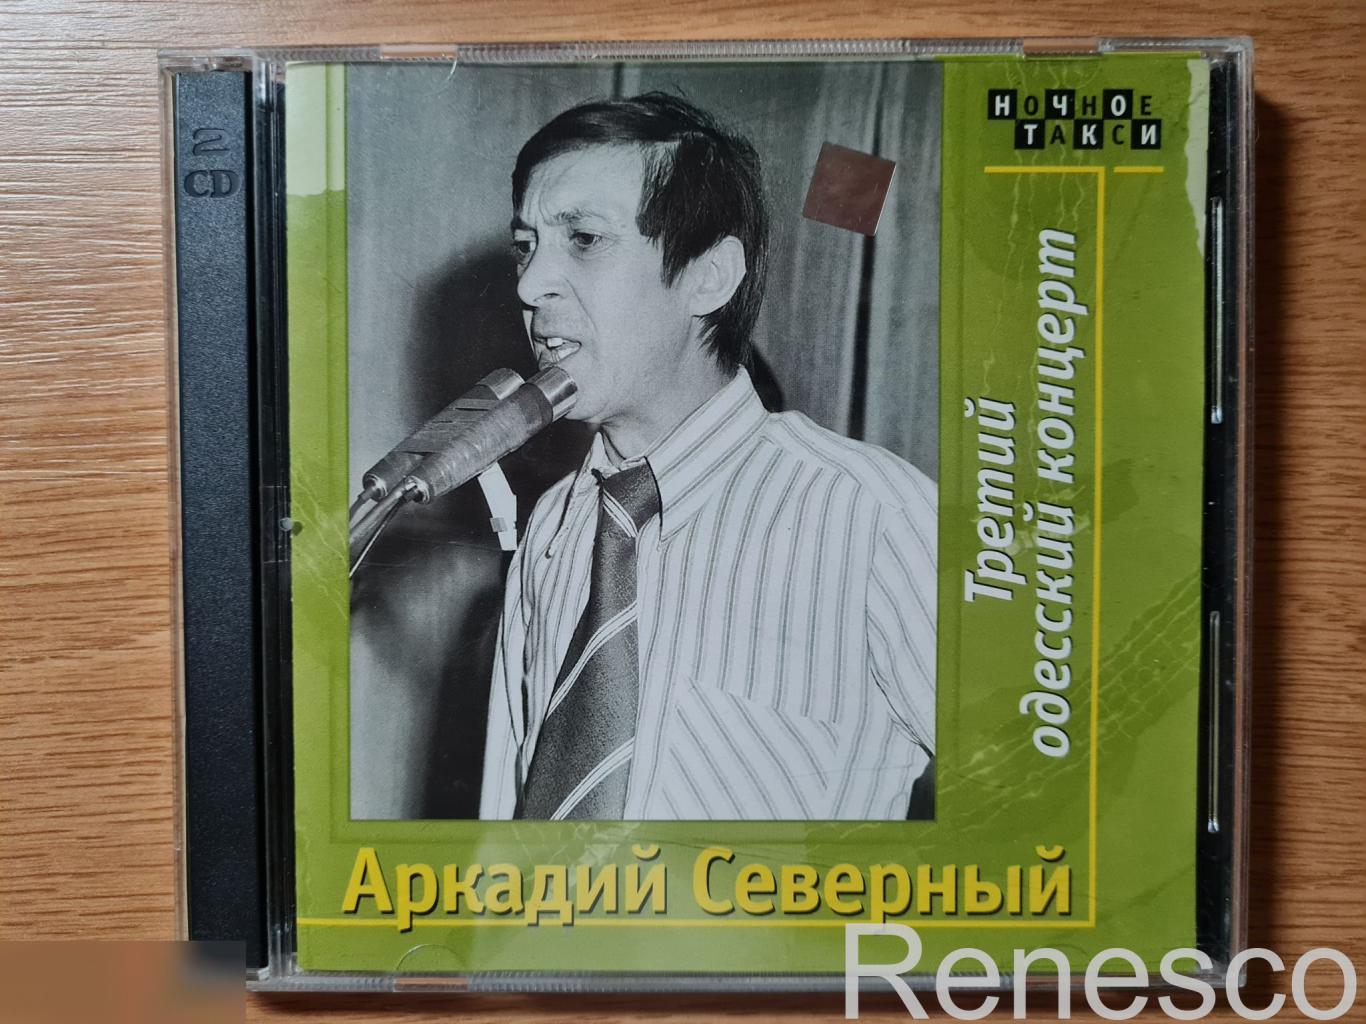 Аркадий Северный – Третий Одесский концерт (Russia) (2000)